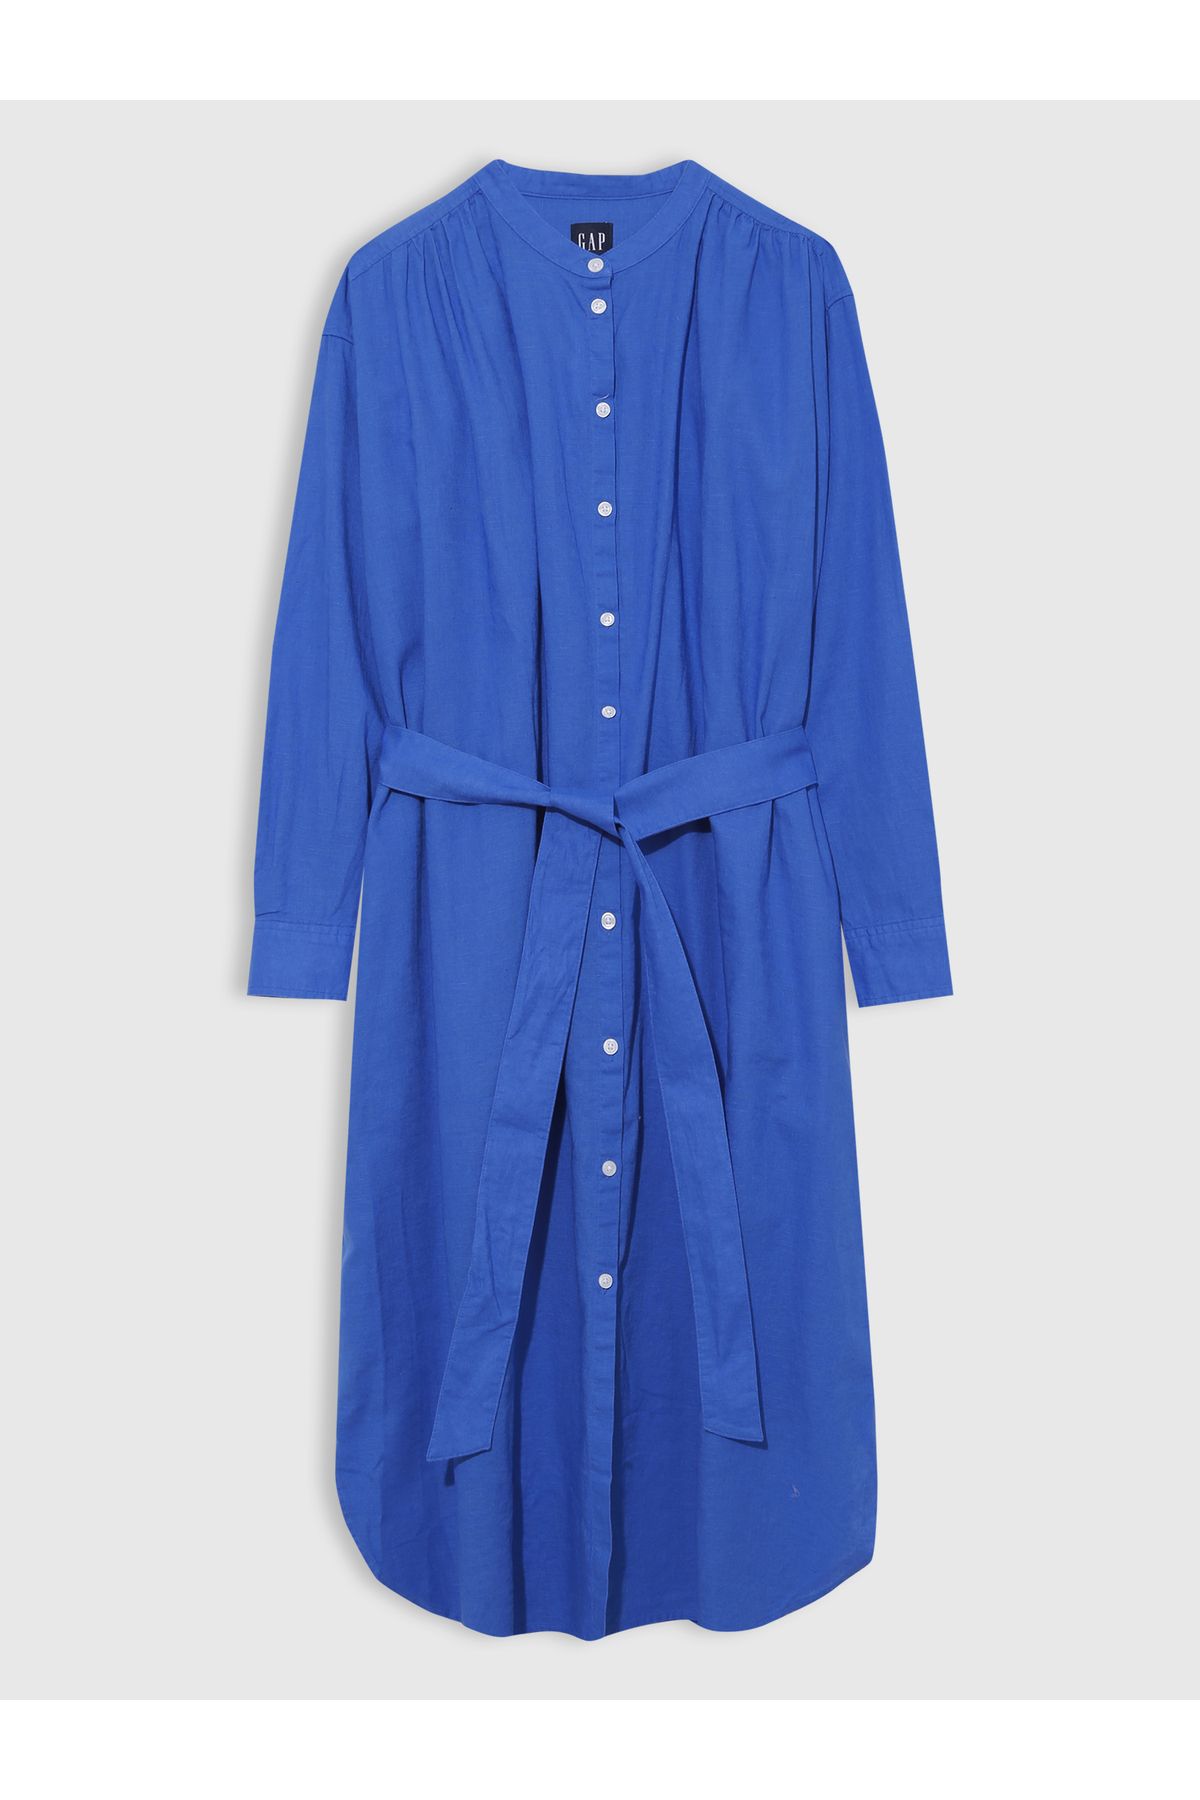 GAP Kadın Mavi Keten Midi Gömlek Elbise